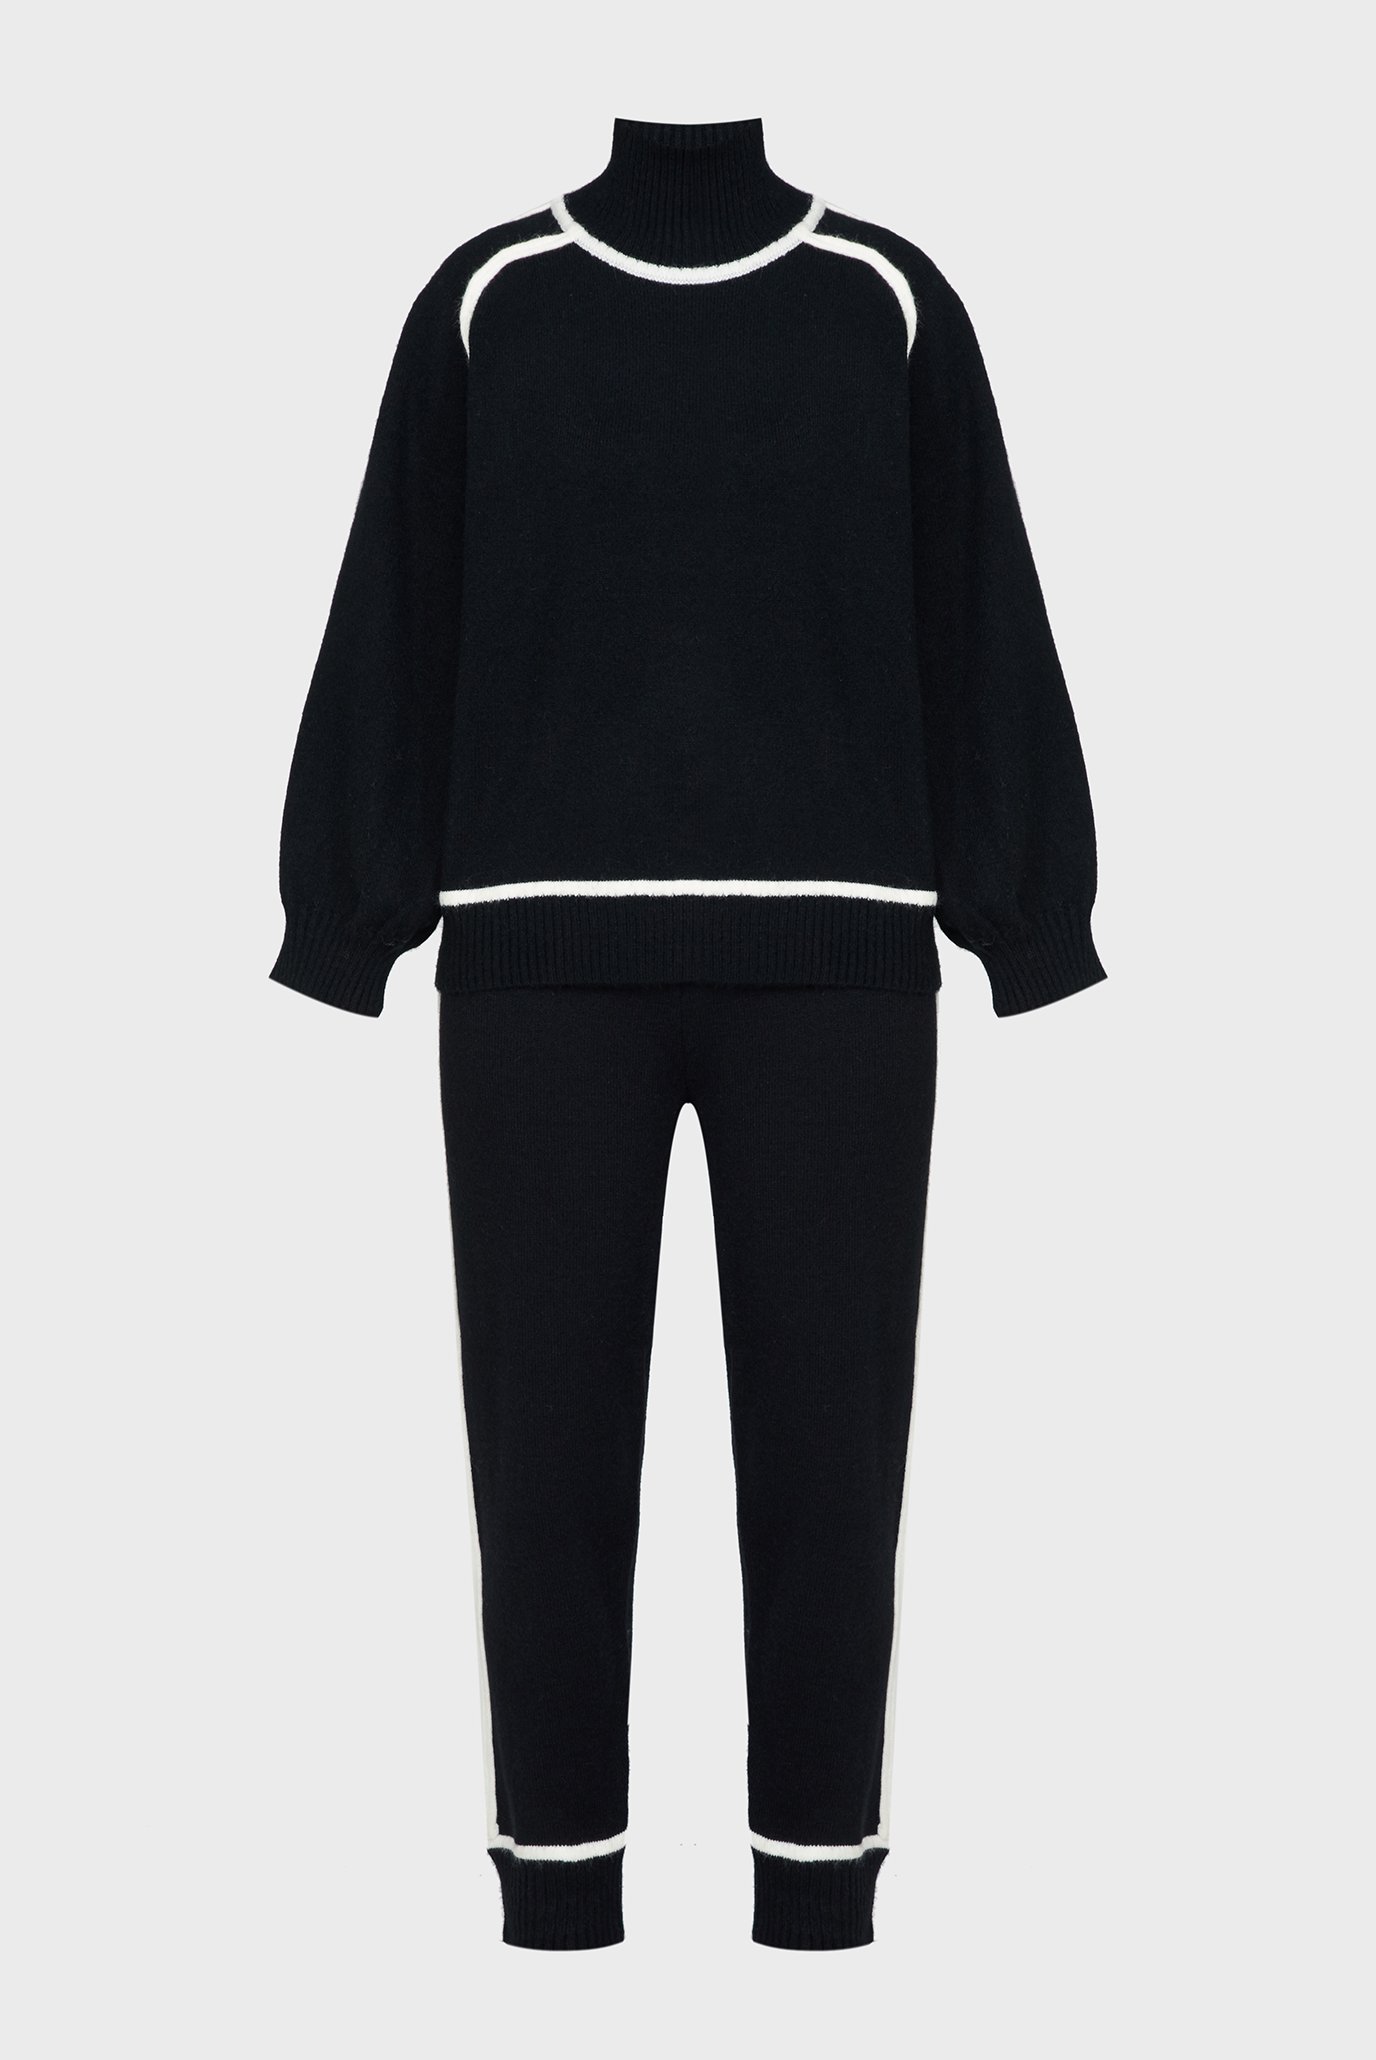 Женский черный комплект одежды (свитер, брюки) 1